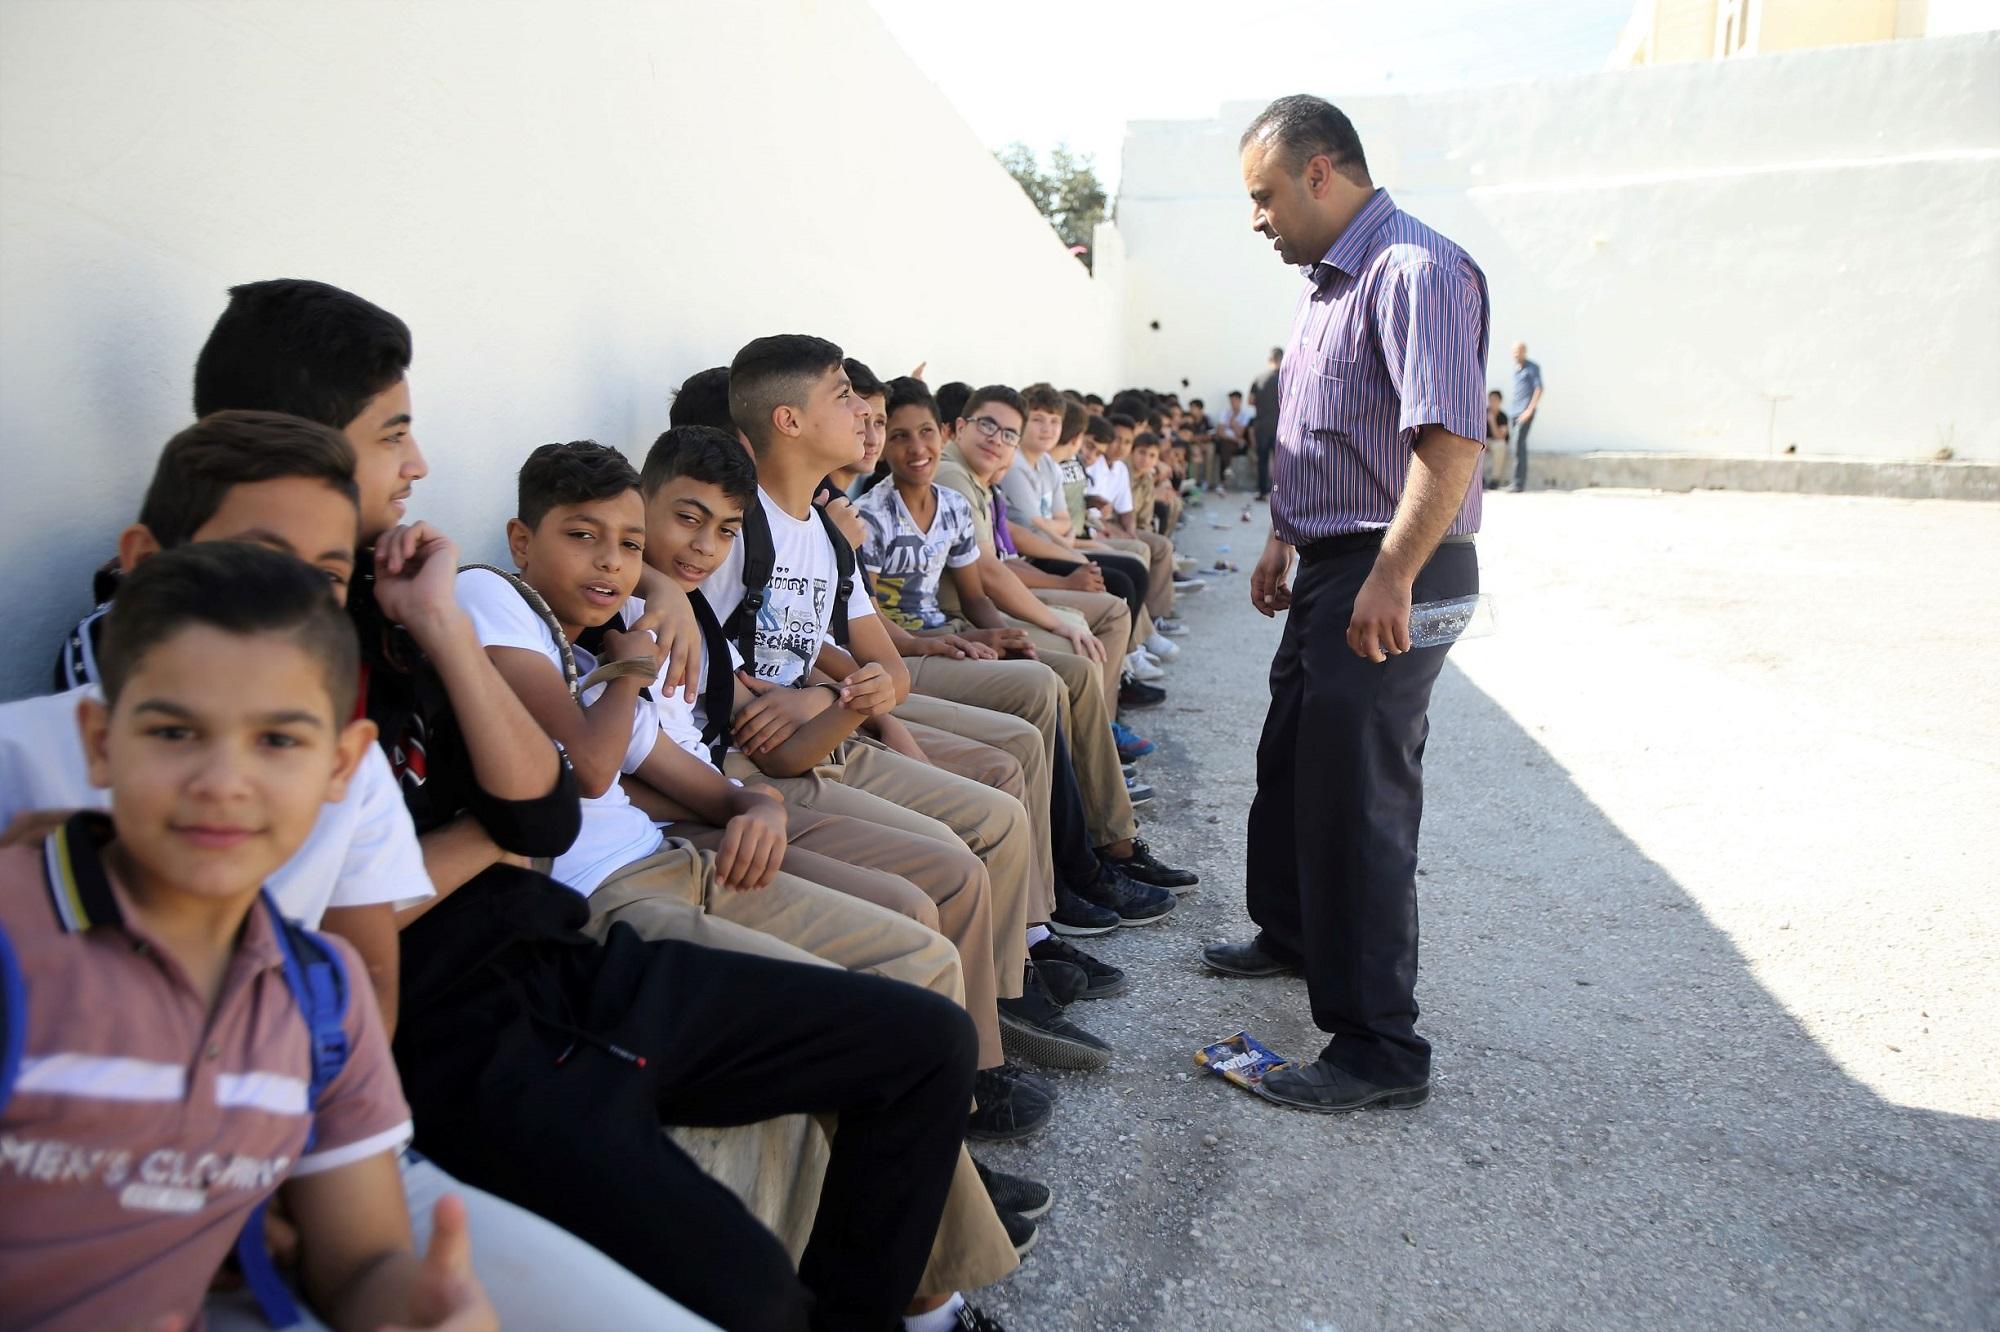 طلاب يجلسون في ساحة مدرسة خلال إضراب المعلمين. (صلاح ملكاوي/المملكة)